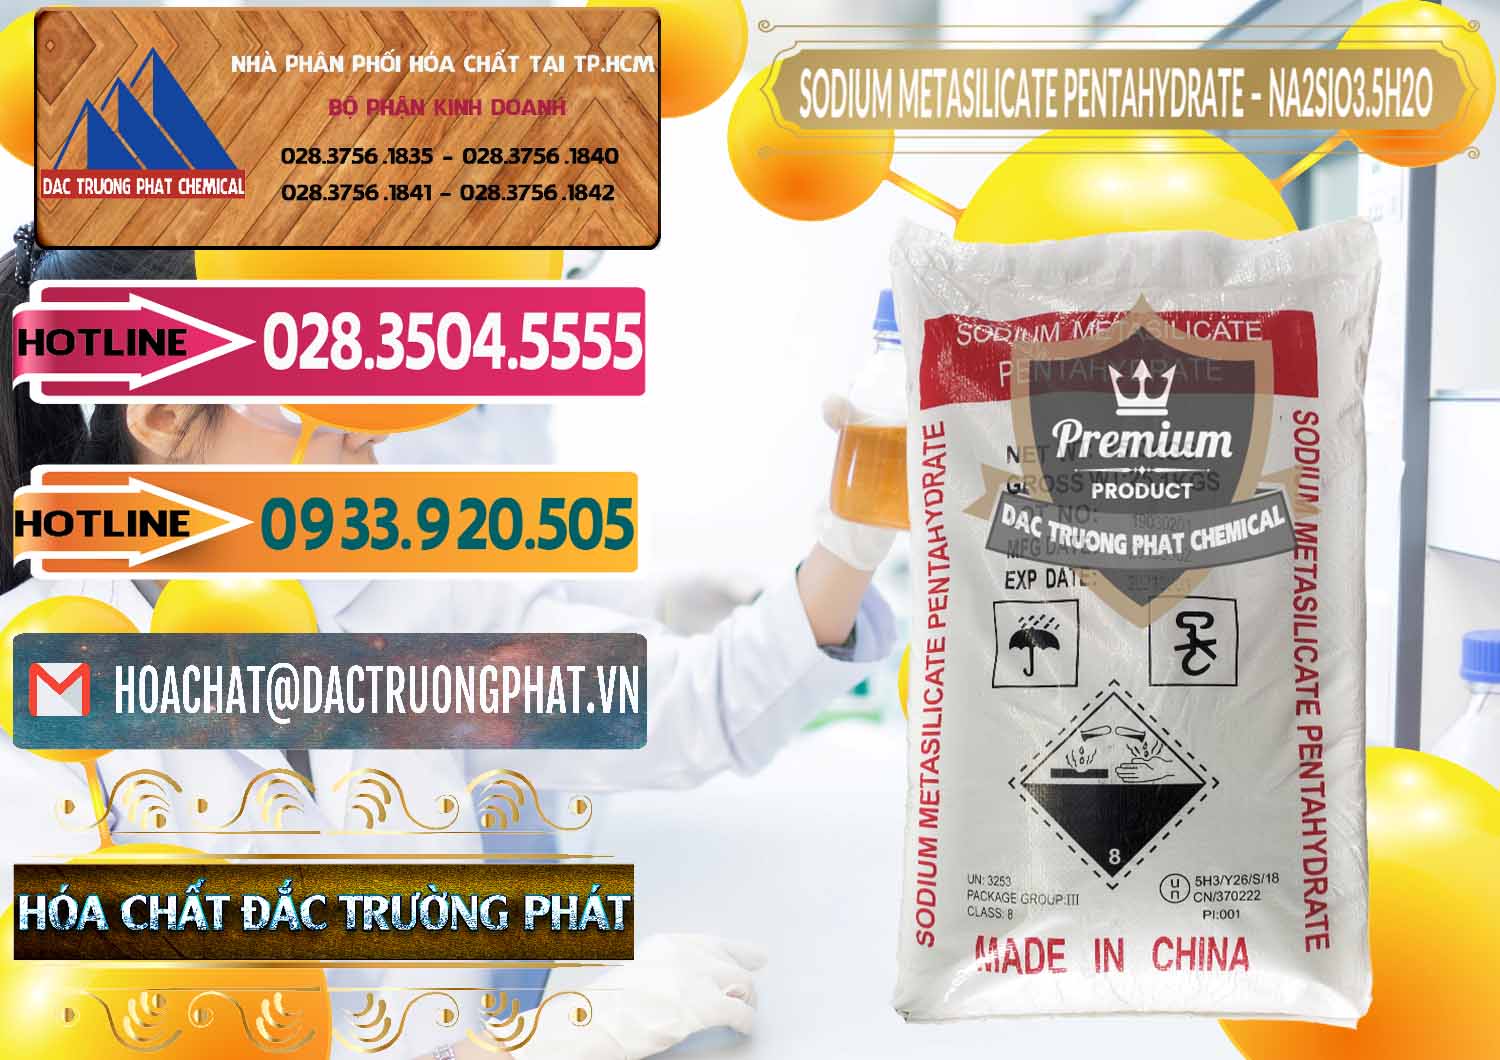 Công ty chuyên phân phối & bán Sodium Metasilicate Pentahydrate – Silicate Bột Trung Quốc China - 0147 - Cty chuyên cung cấp & bán hóa chất tại TP.HCM - dactruongphat.vn